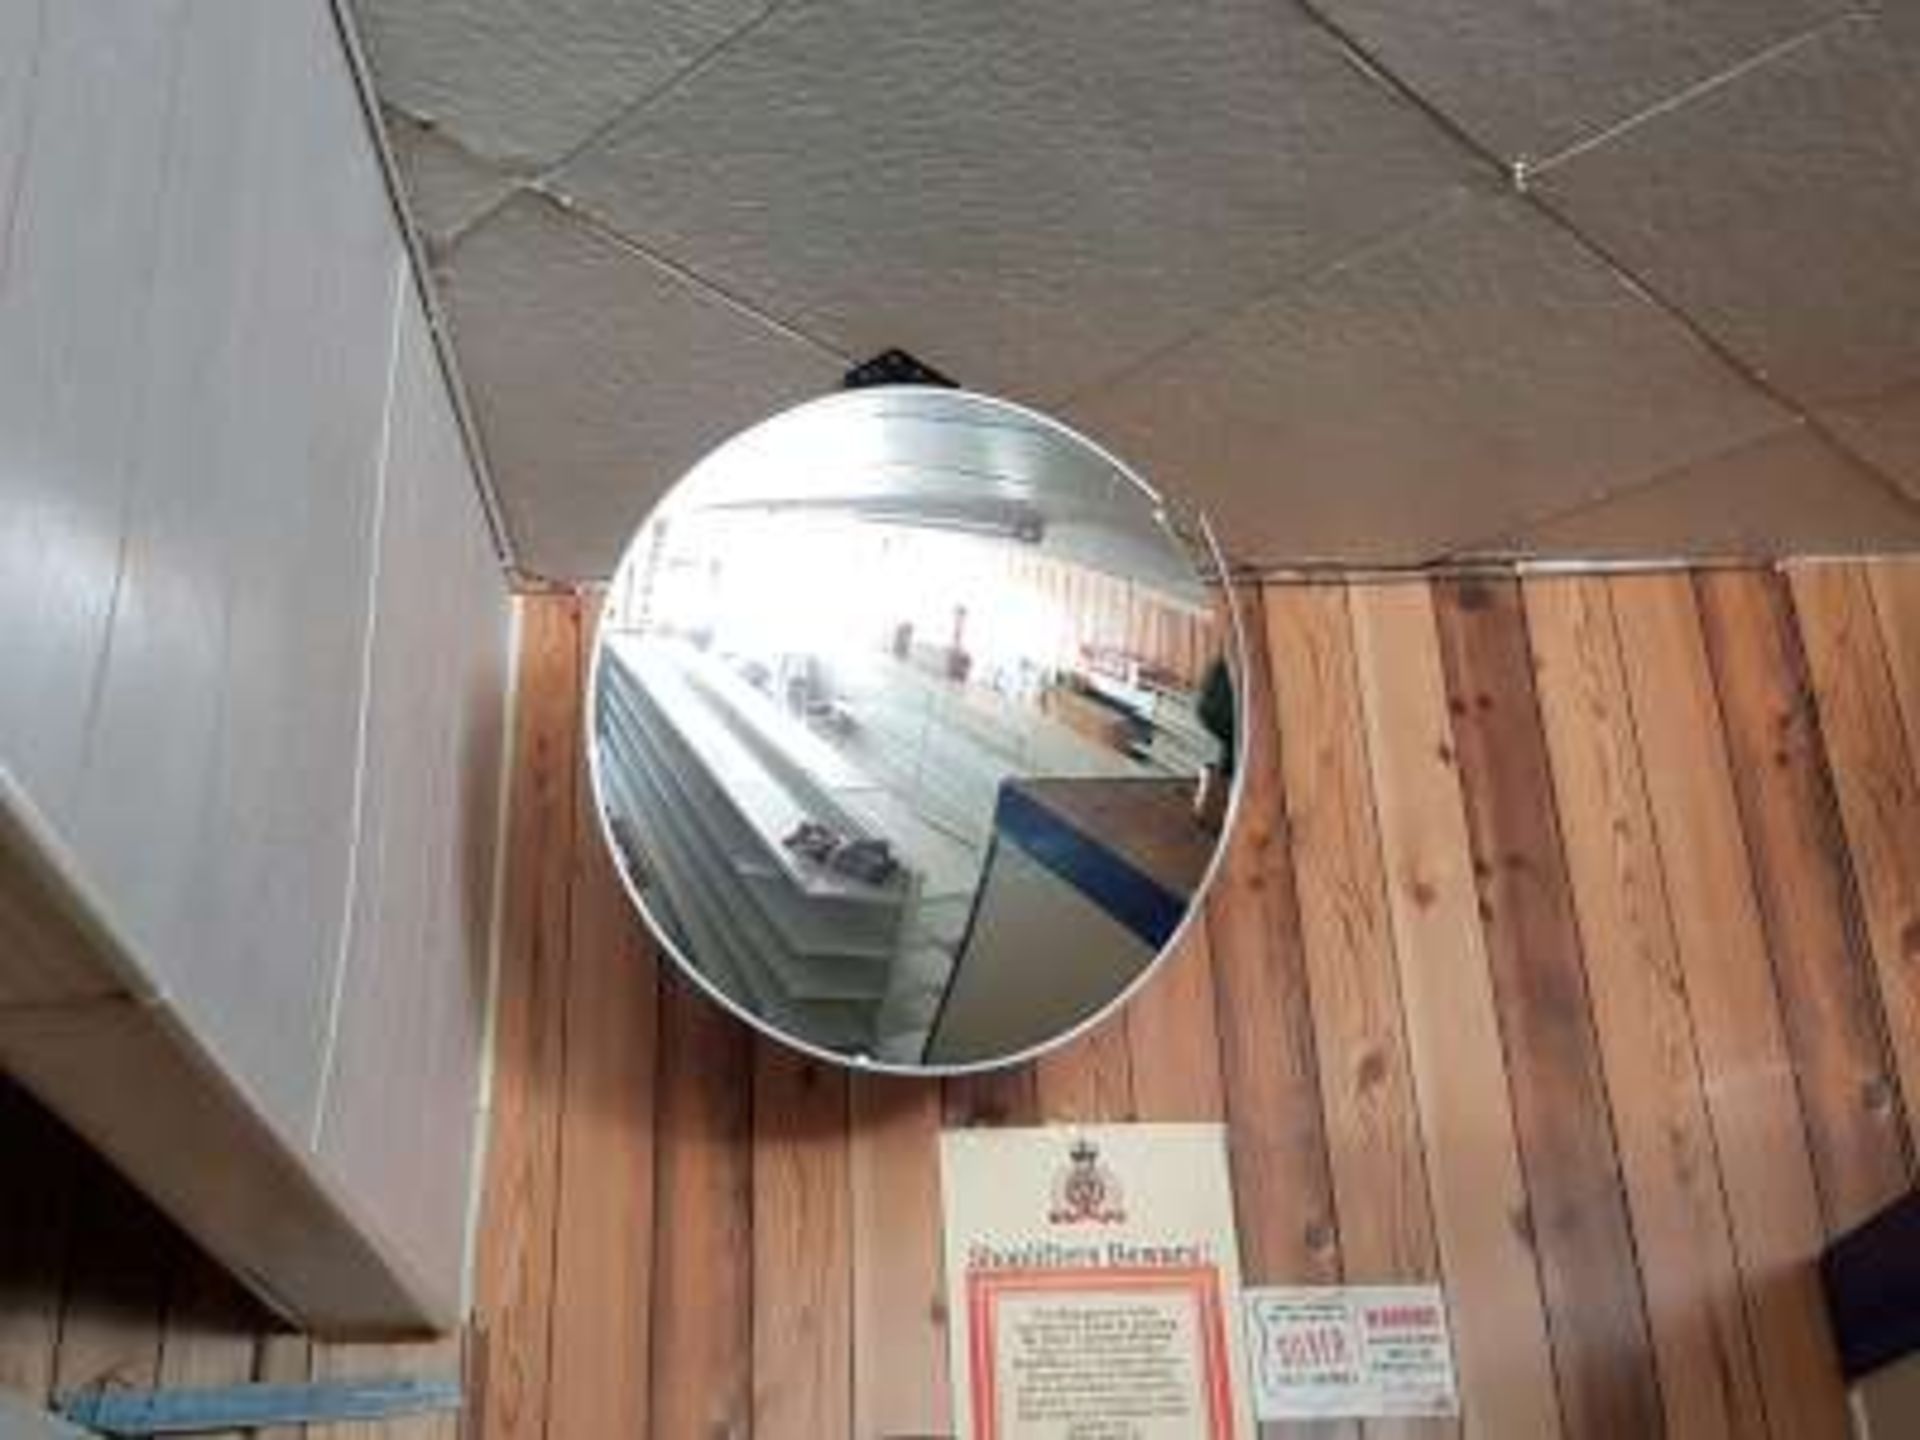 Convex mirror for security purpose